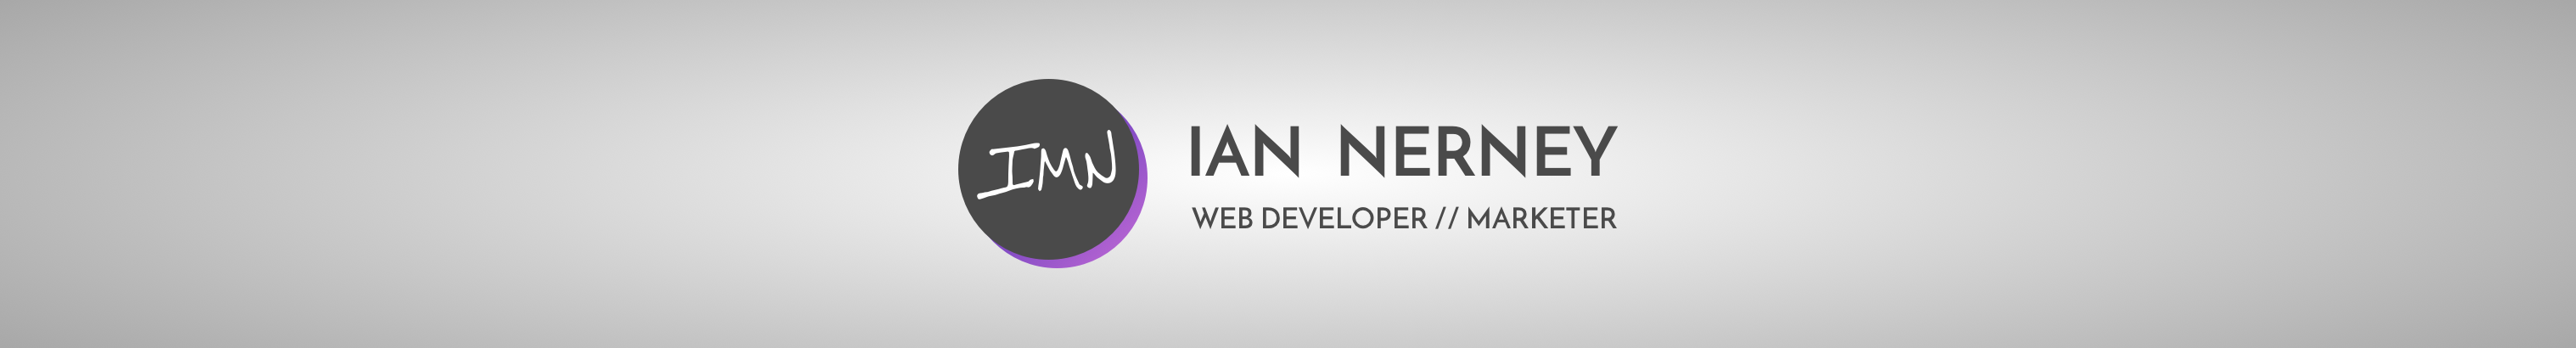 Banner de perfil de Ian Nerney